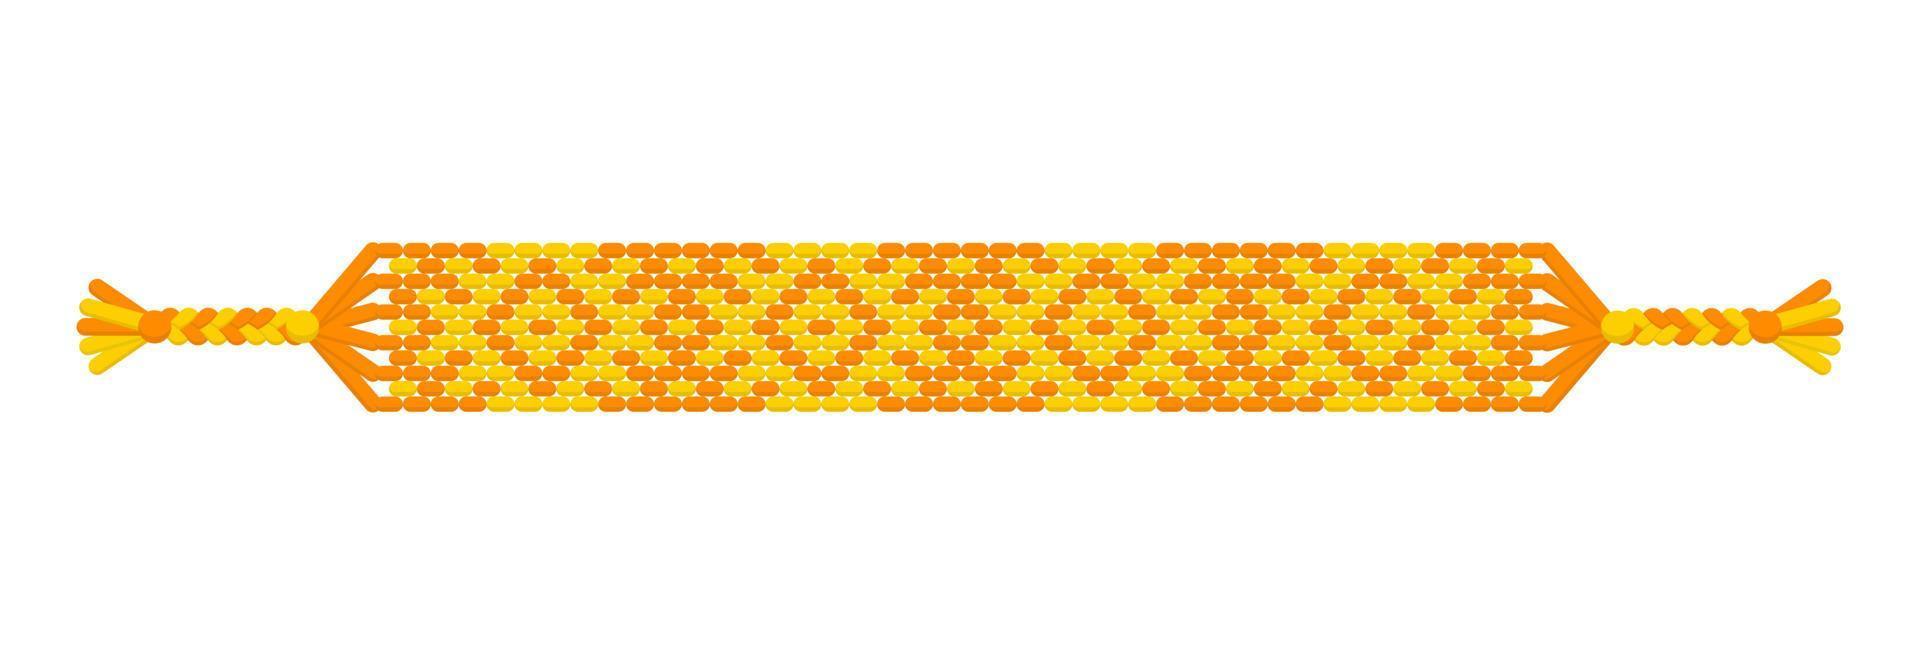 vector multicolor pulsera de la amistad hippie hecha a mano de hilos amarillos y naranjas.